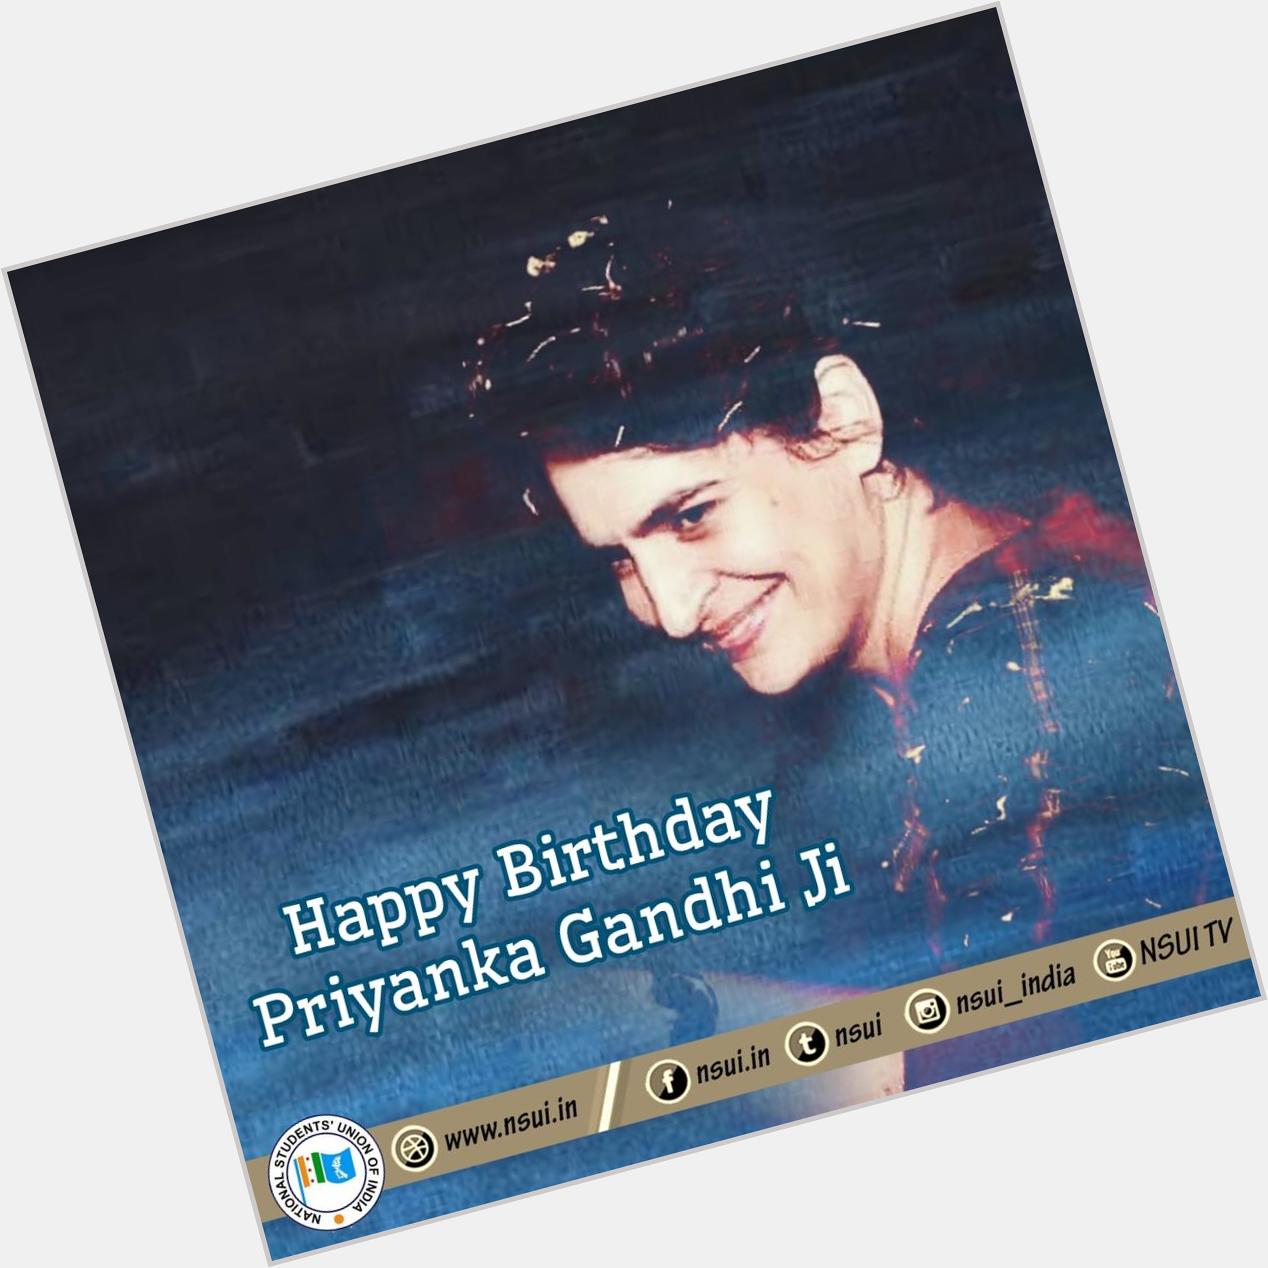 A very Happy Birthday to Smt. Priyanka Gandhi Vadra  Many Many Happy Returns of the Day, Stay blessed! 